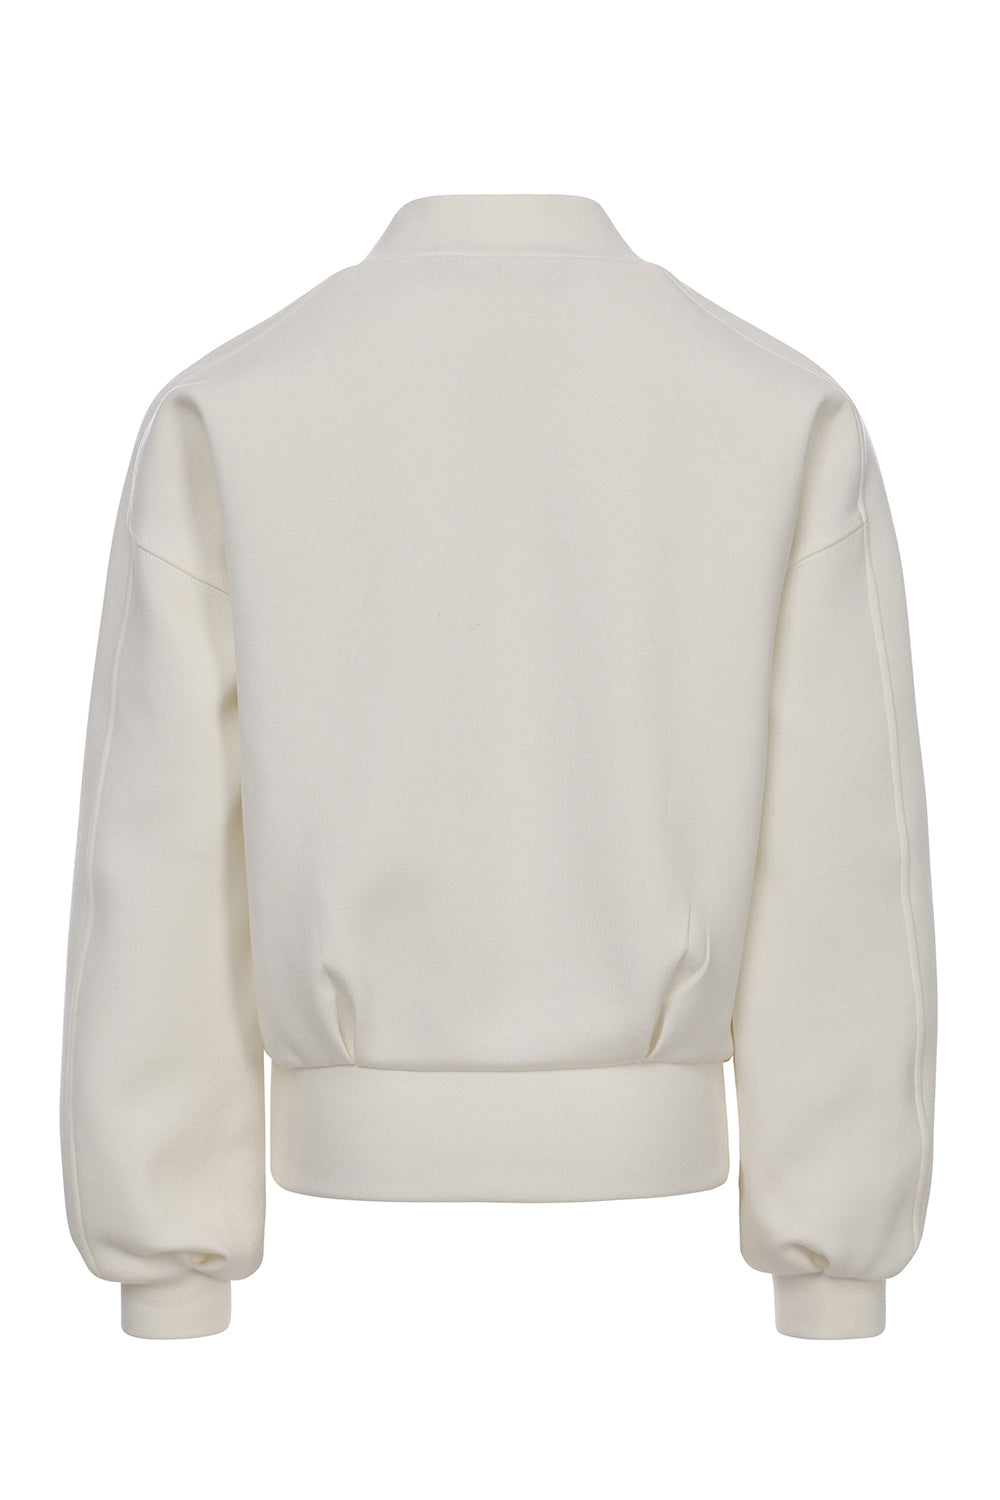 Meisjes Soft Sweater van LOOXS 10sixteen in de kleur off white in maat 176.